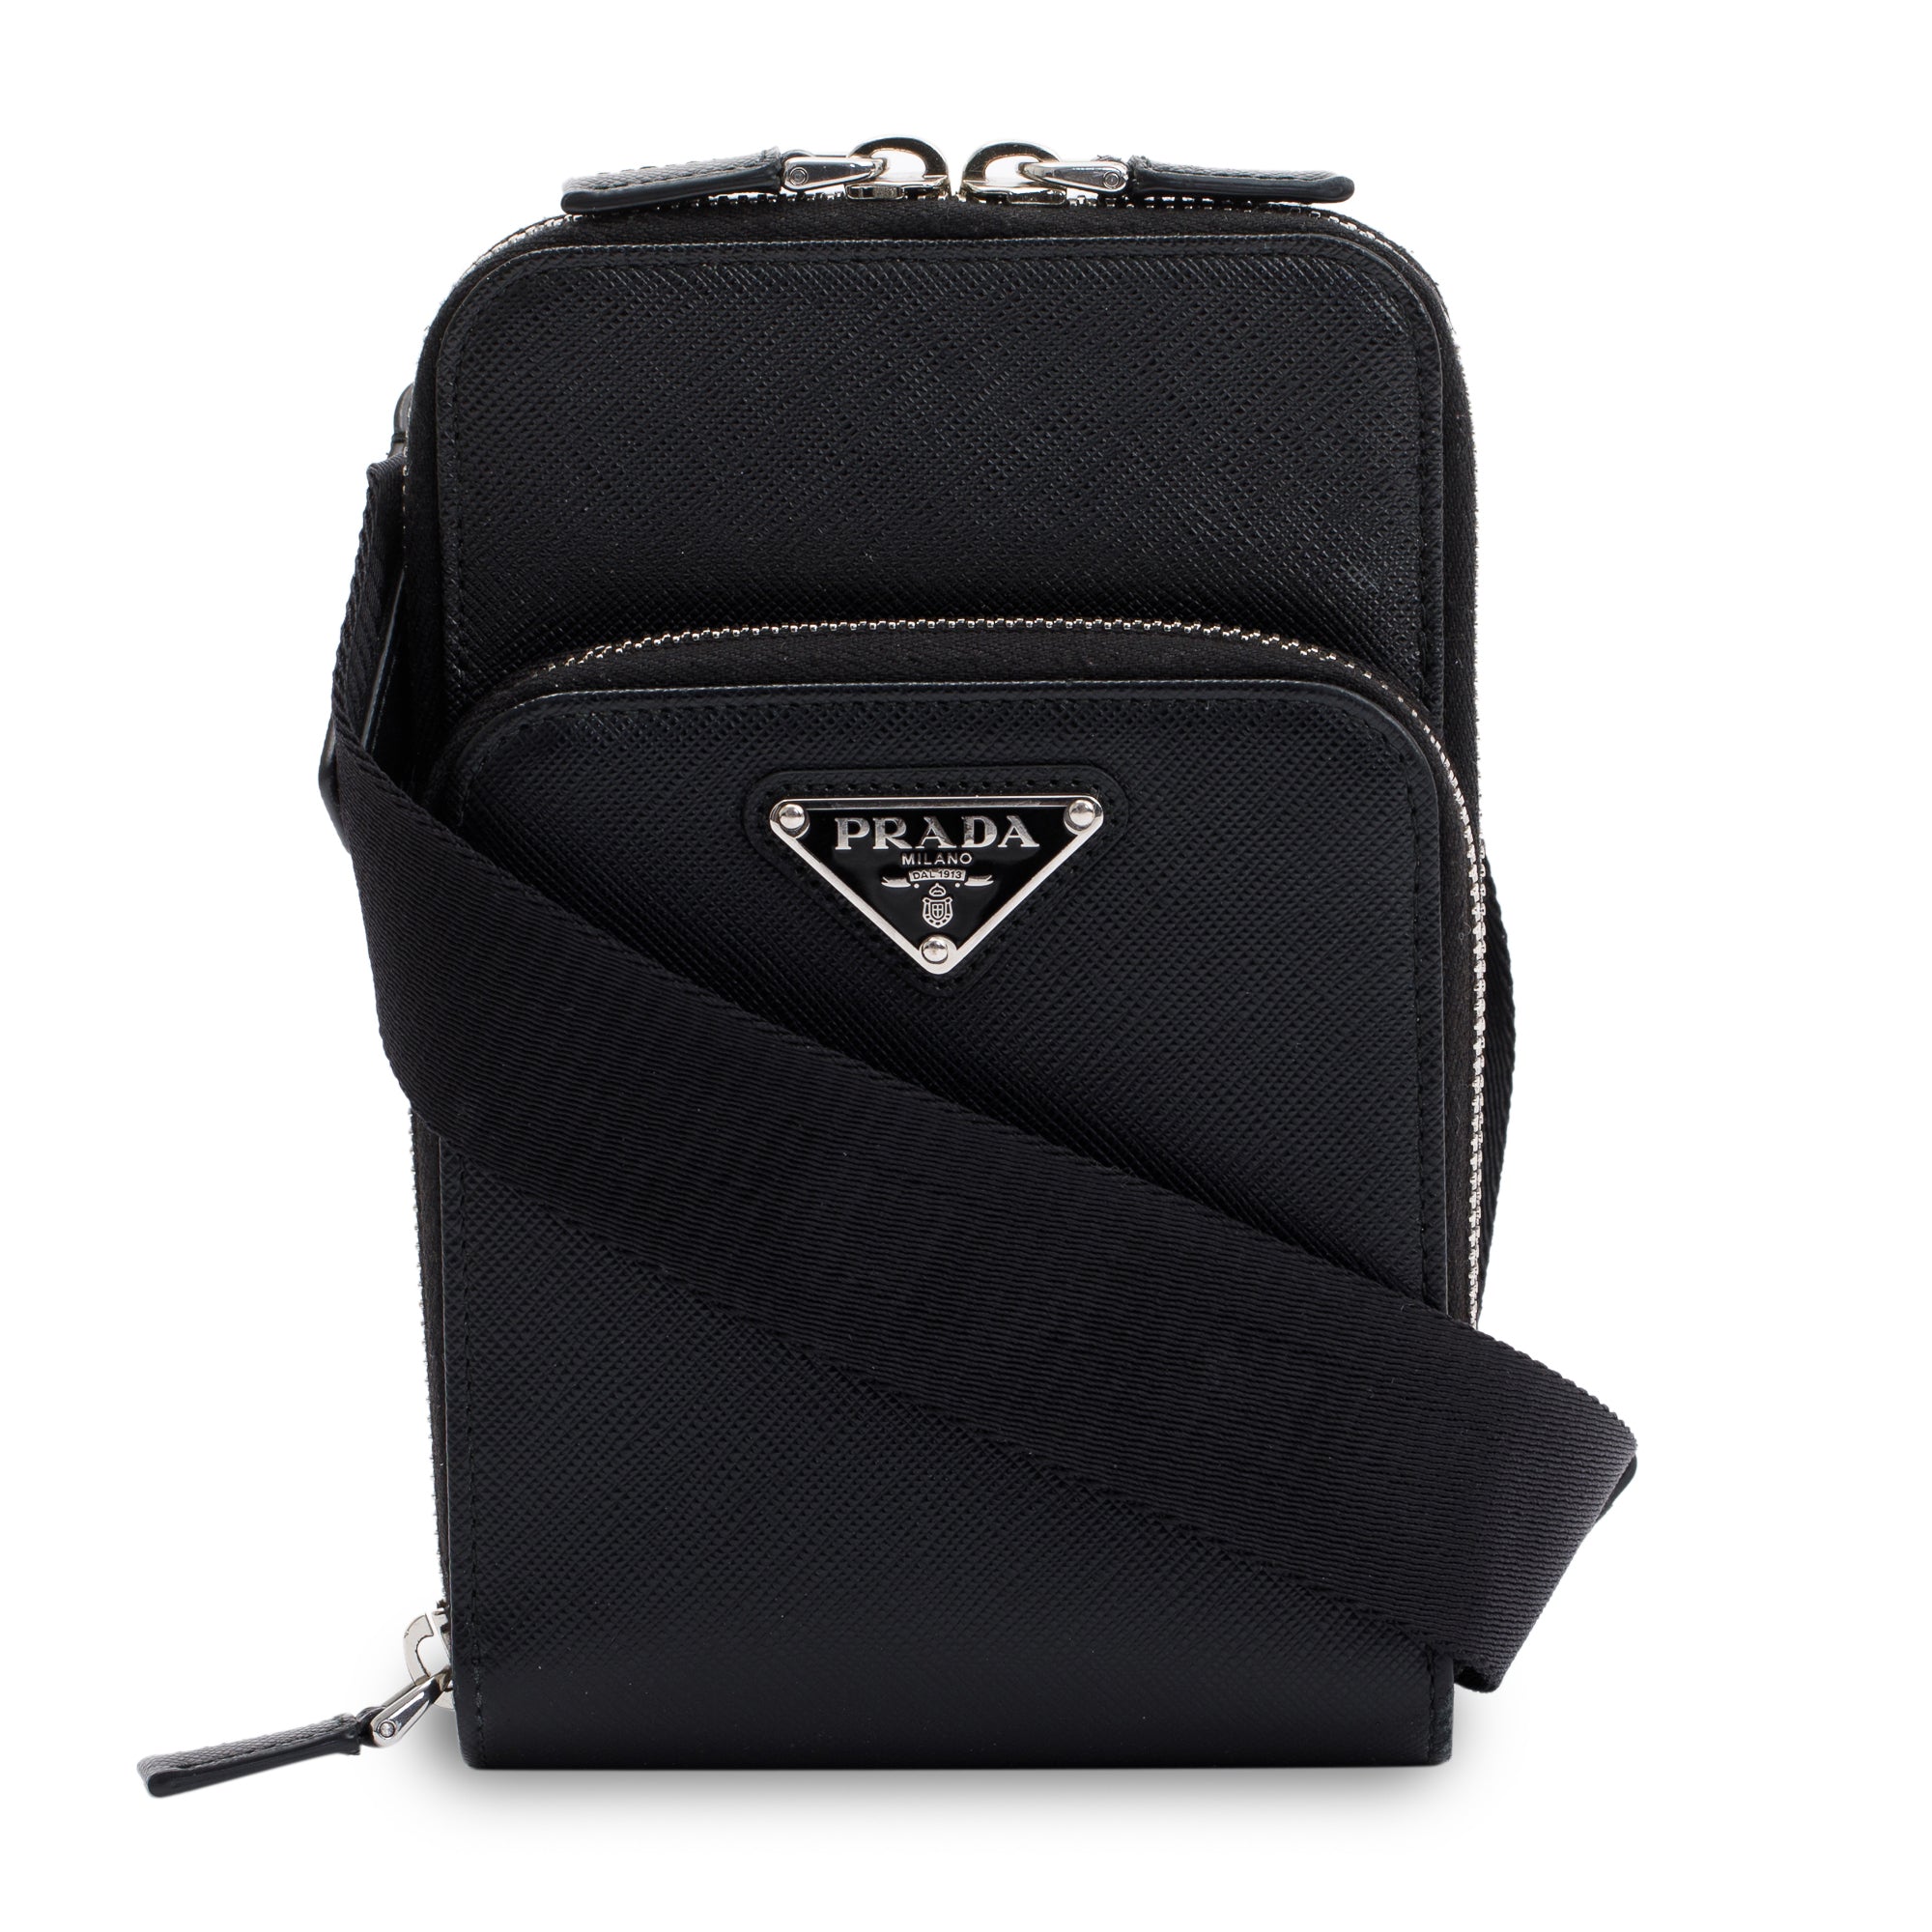 Prada Saffiano Leather Smartphone Case Crossbody Bag